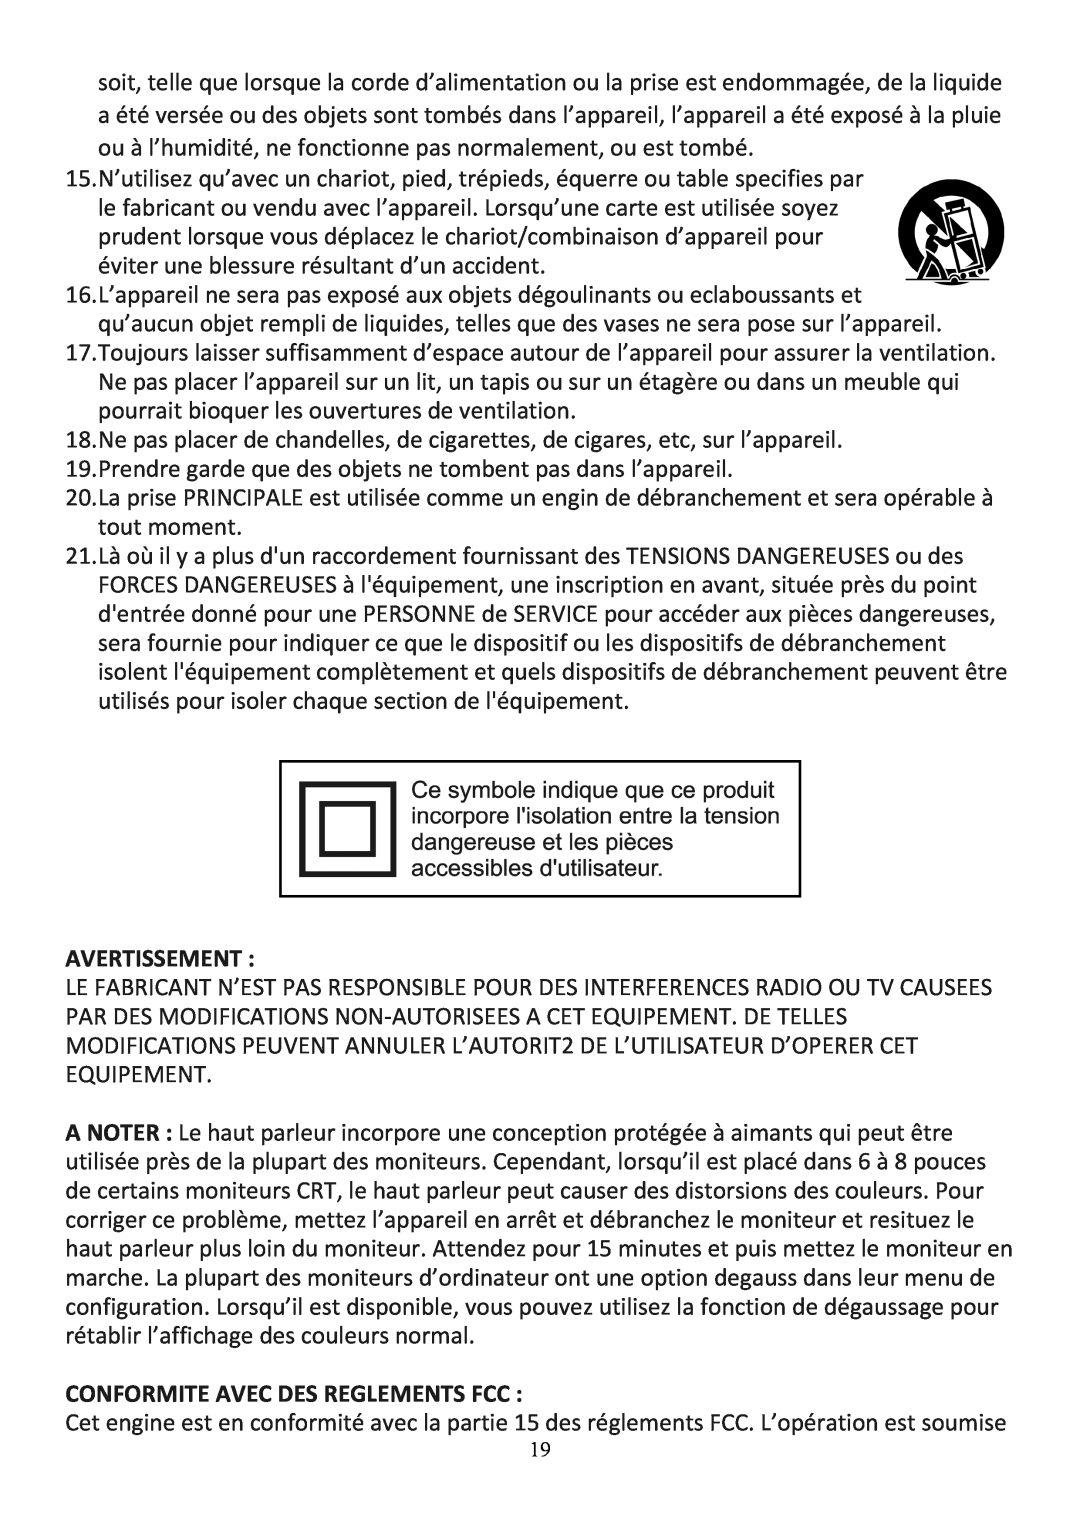 Audiovox CE208BT user manual Avertissement, Conformite Avec Des Reglements Fcc 